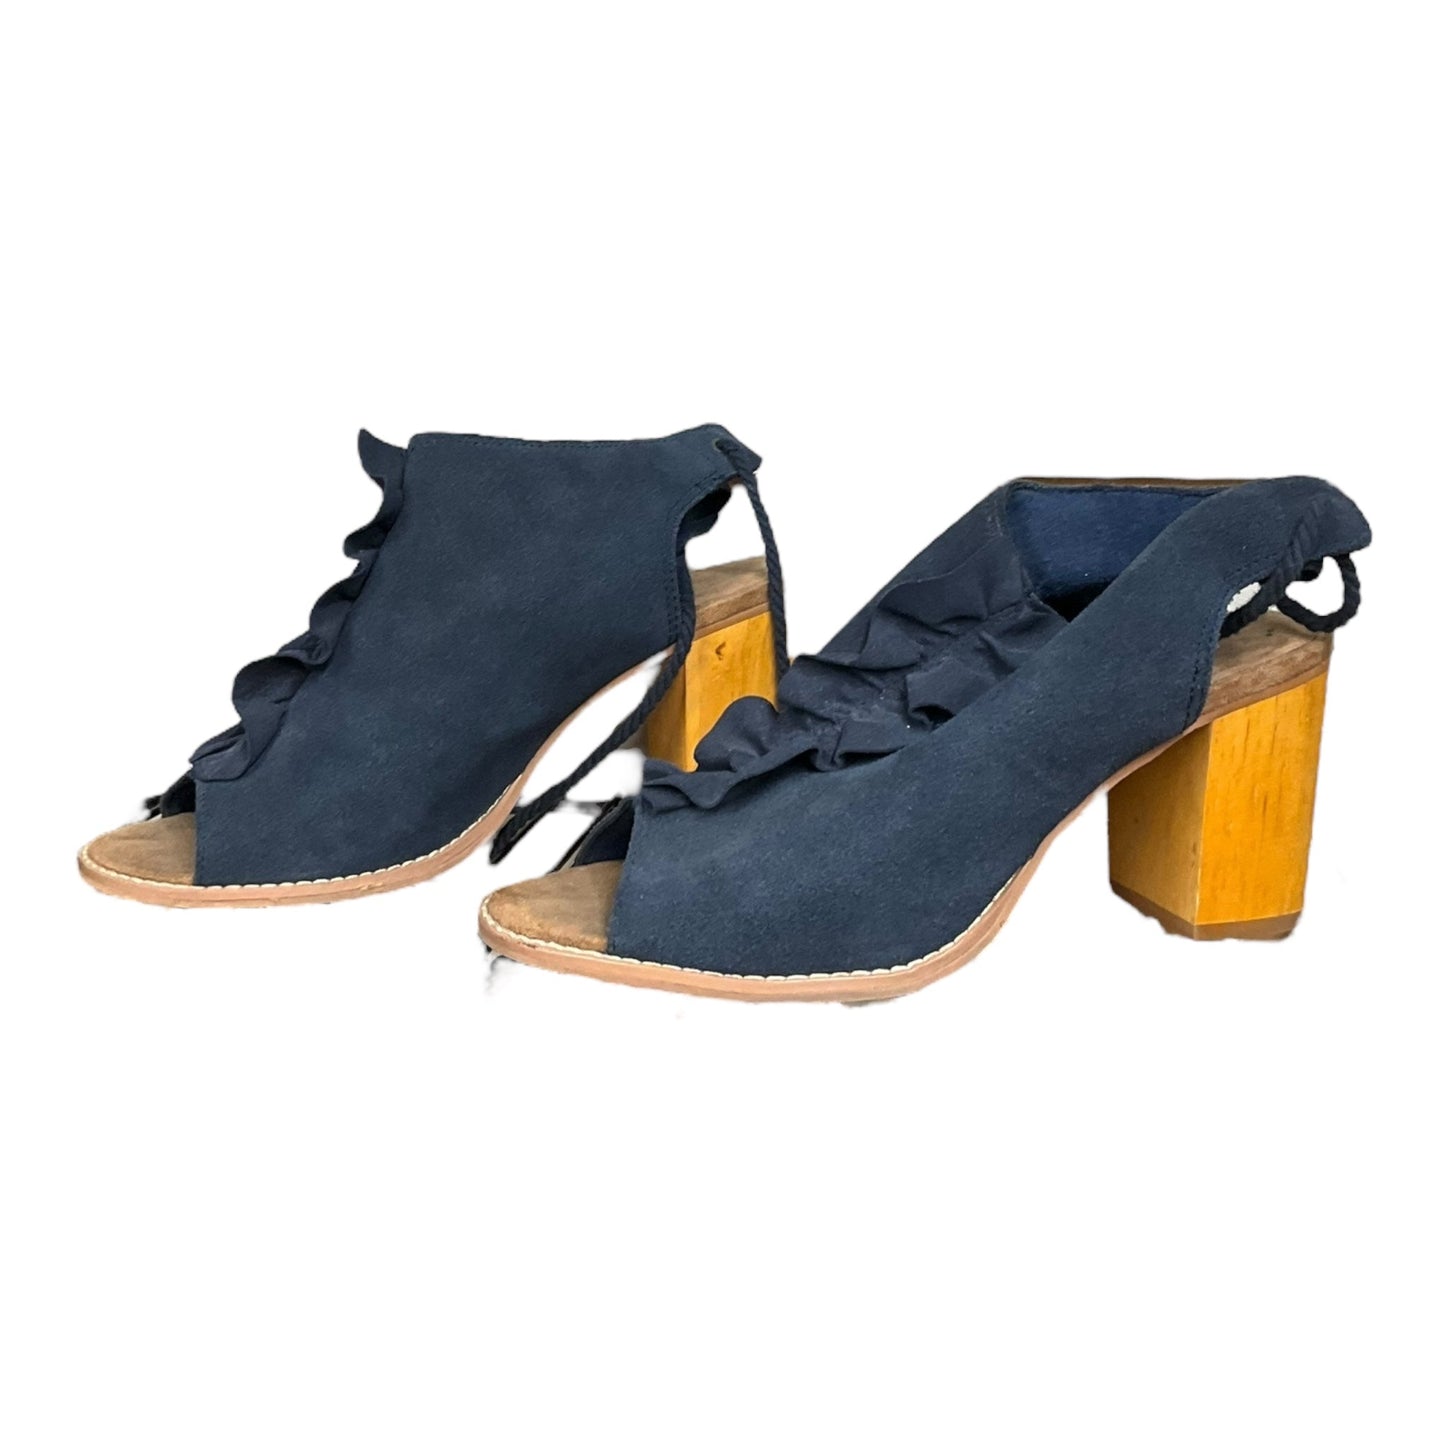 Navy Shoes Heels Block Toms, Size 7.5